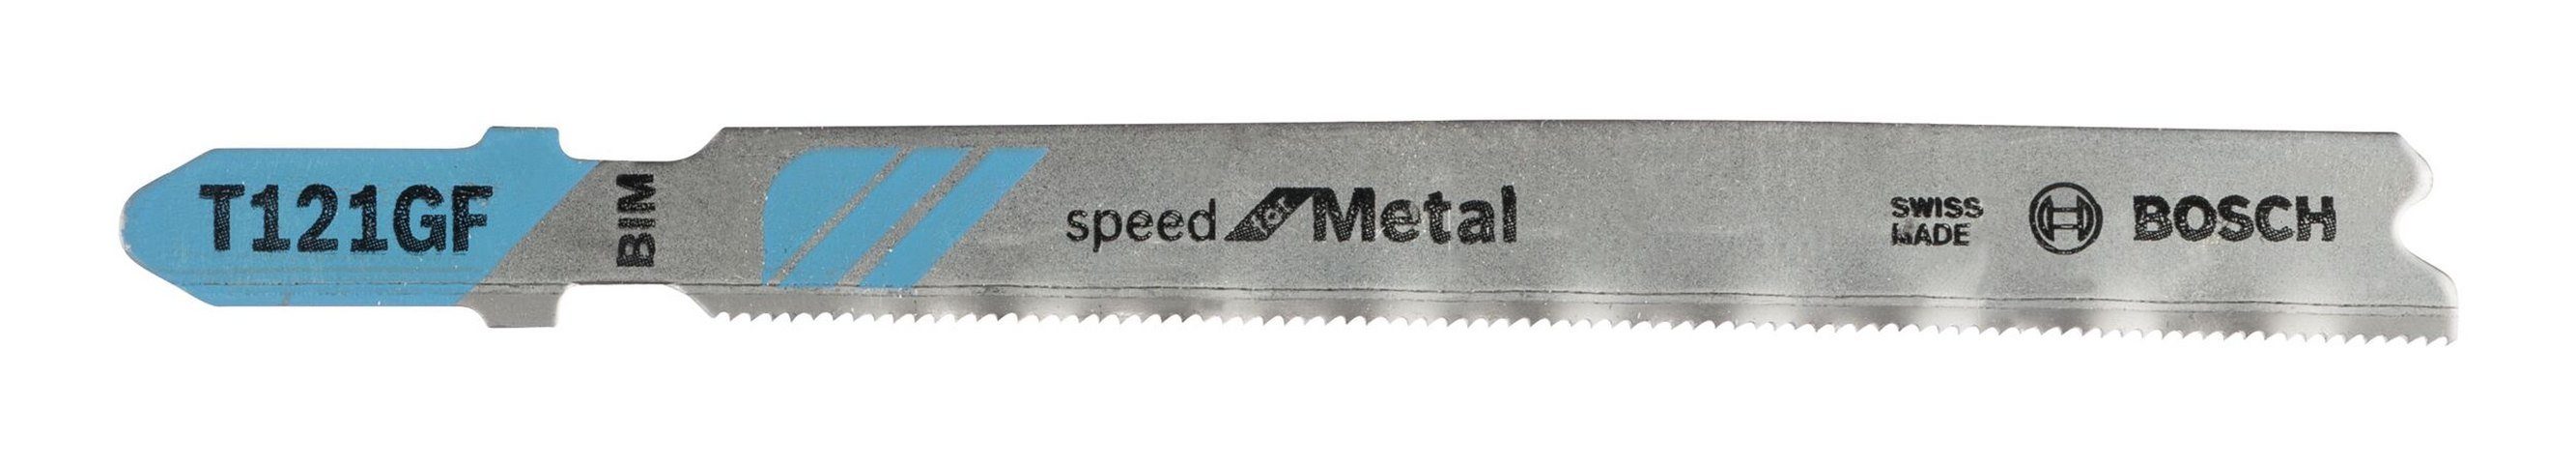 BOSCH Stichsägeblatt (5 Stück), T 121 GF Speed for Metal Bleche - 5er-Pack